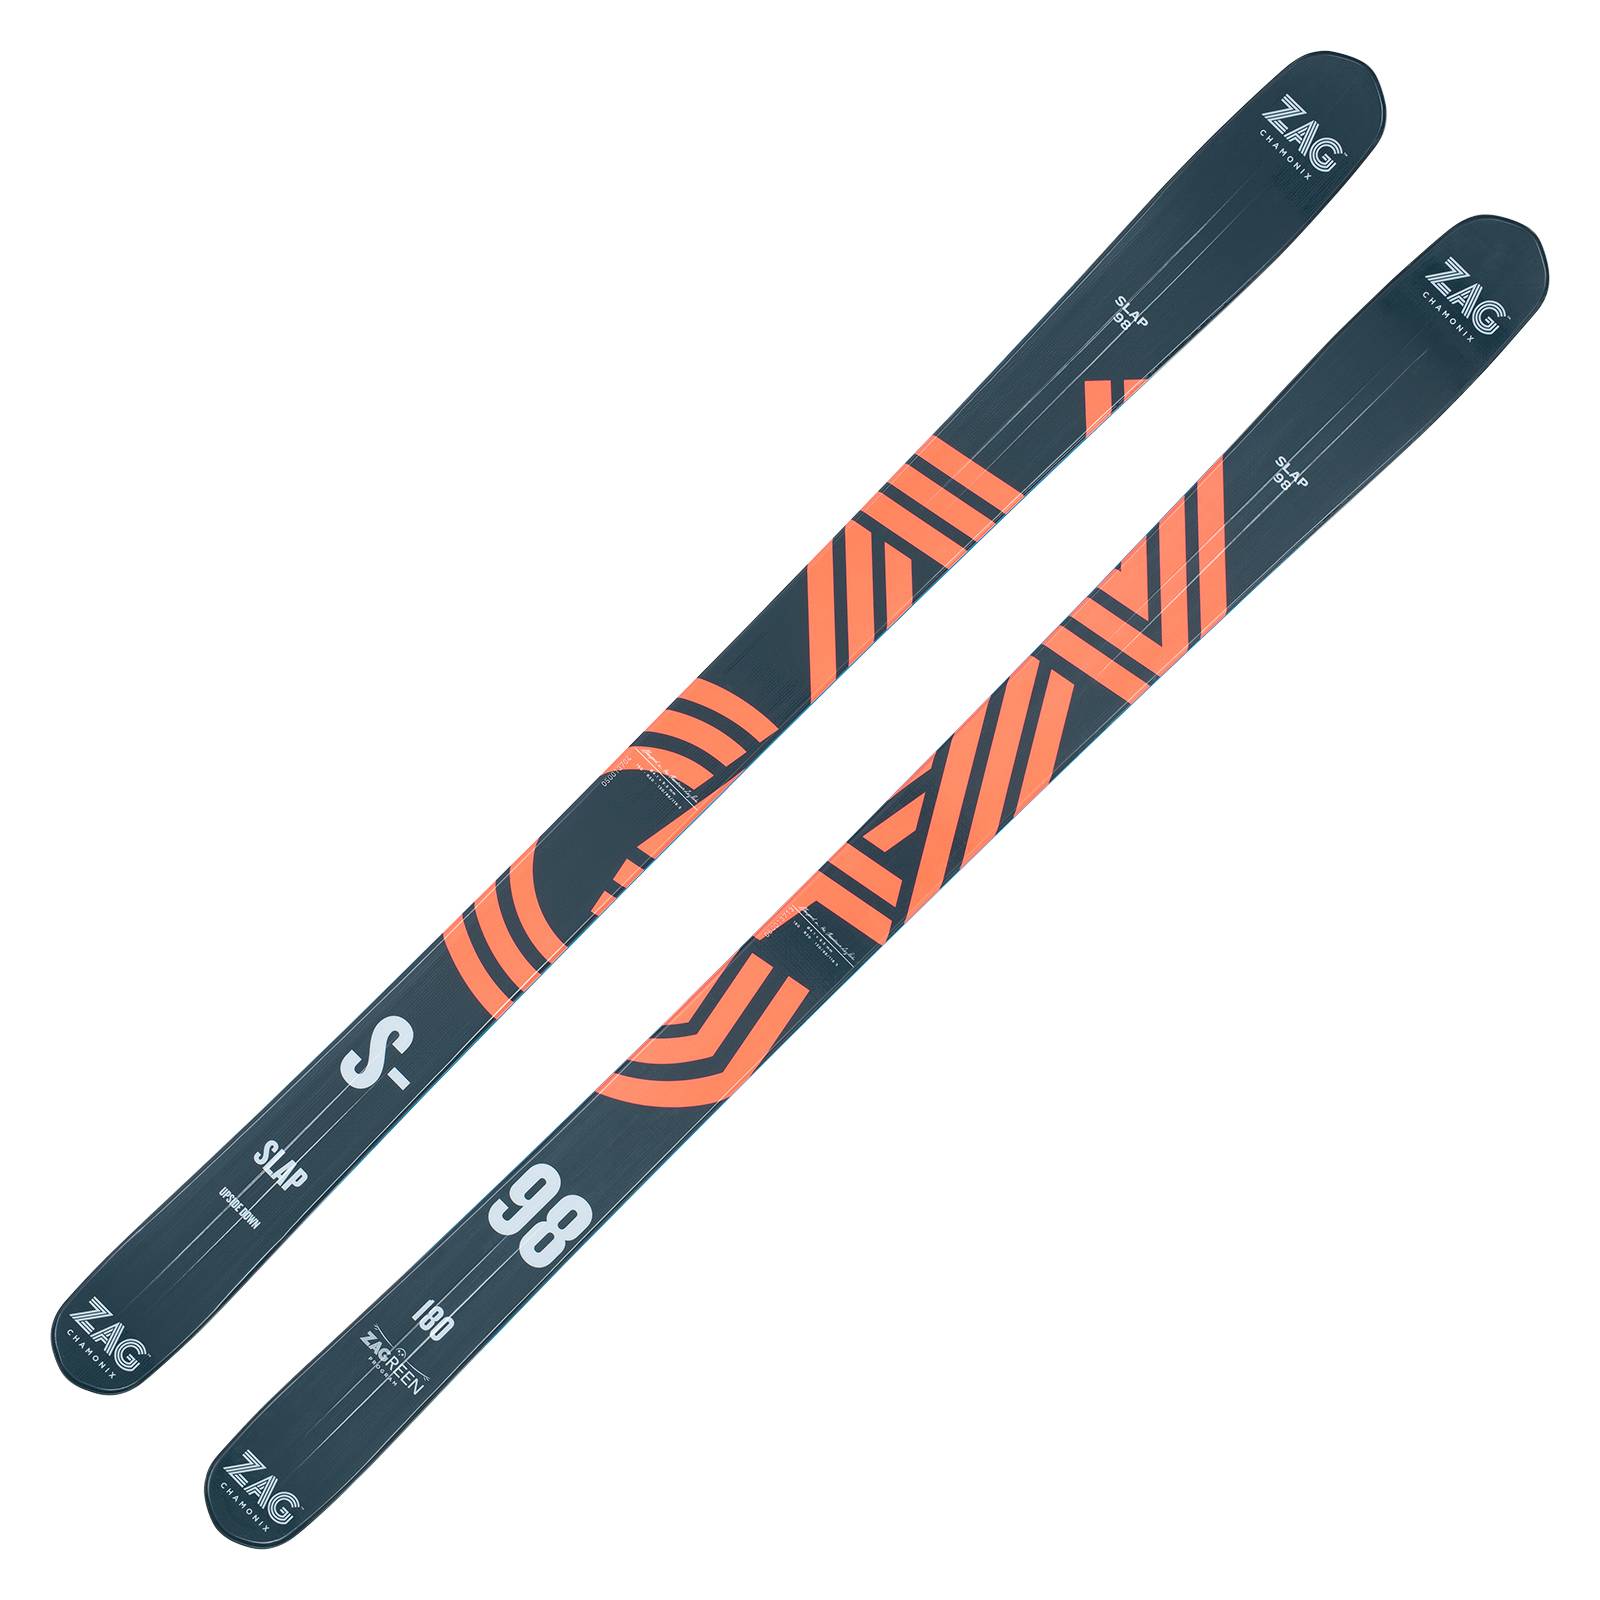 ZAG SLAP 98 Freeride Ski 2022/23